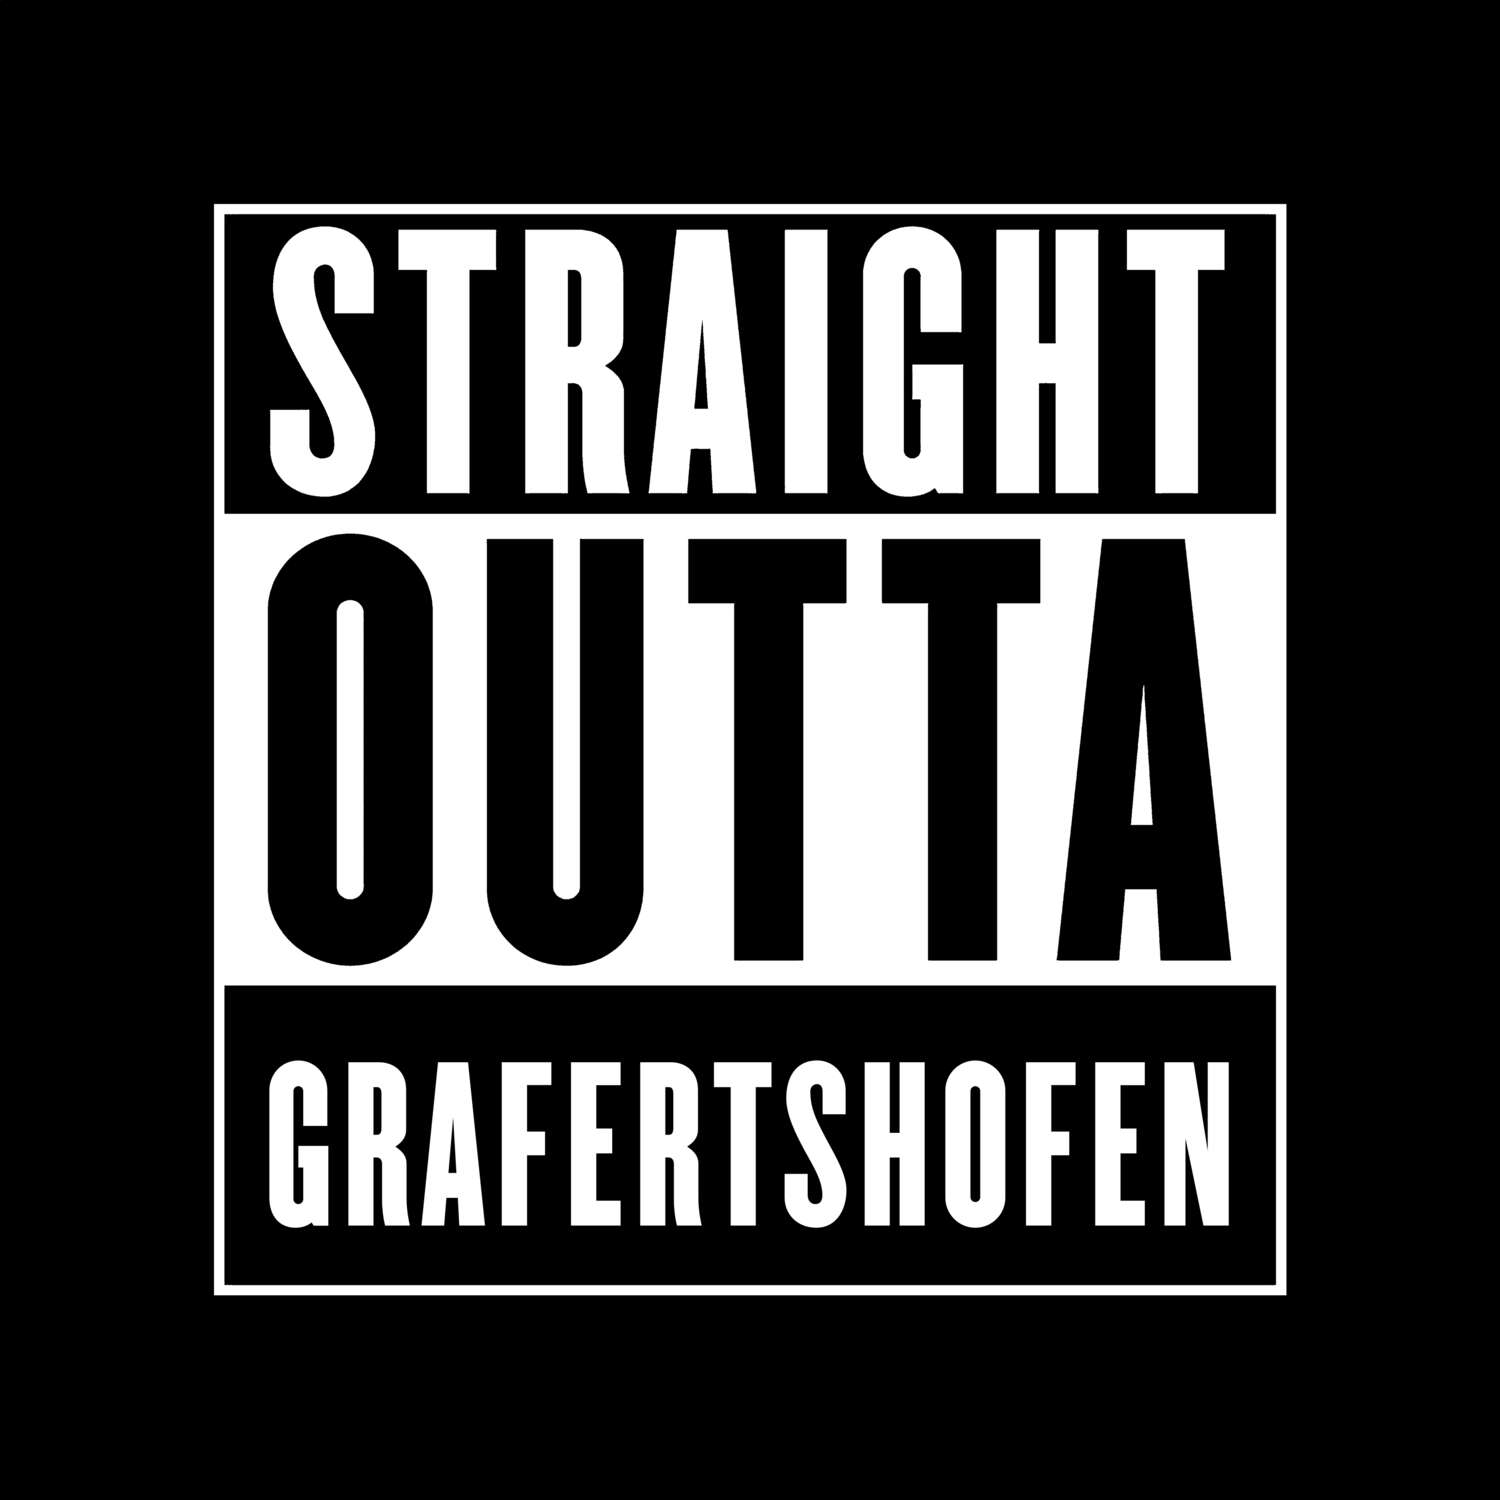 Grafertshofen T-Shirt »Straight Outta«